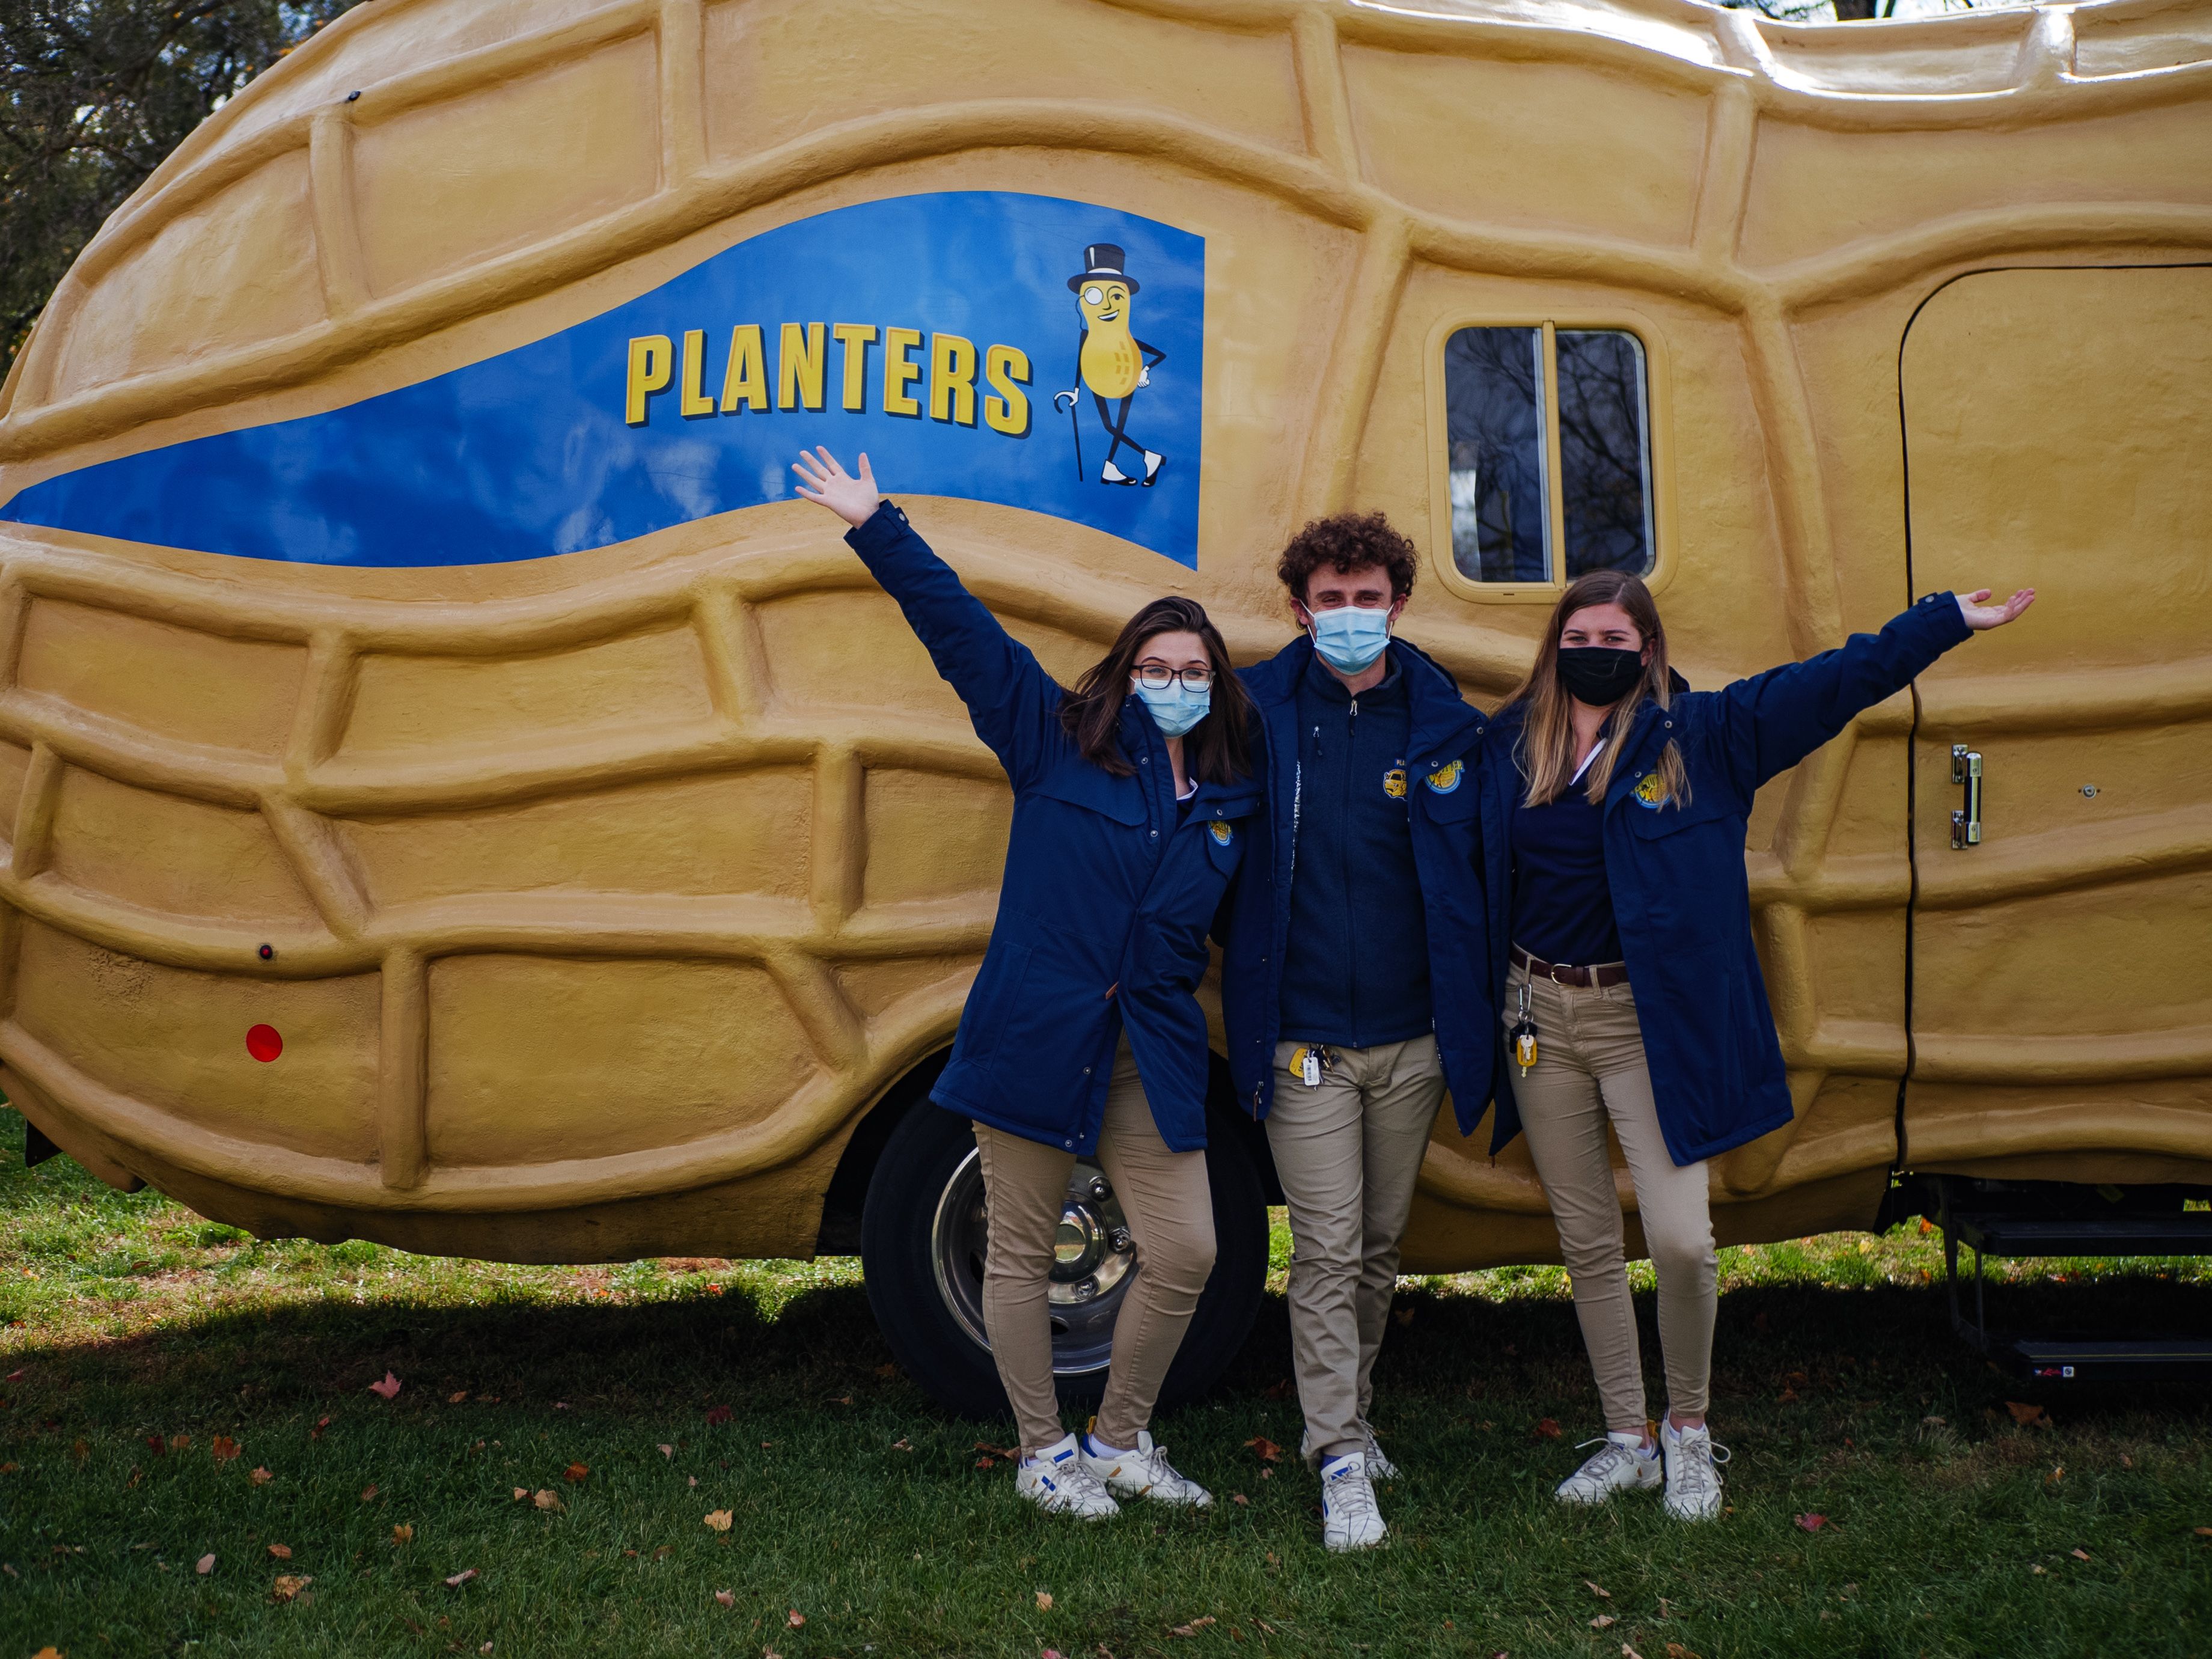 Planters - Mr. Peanut Inflatable Costume